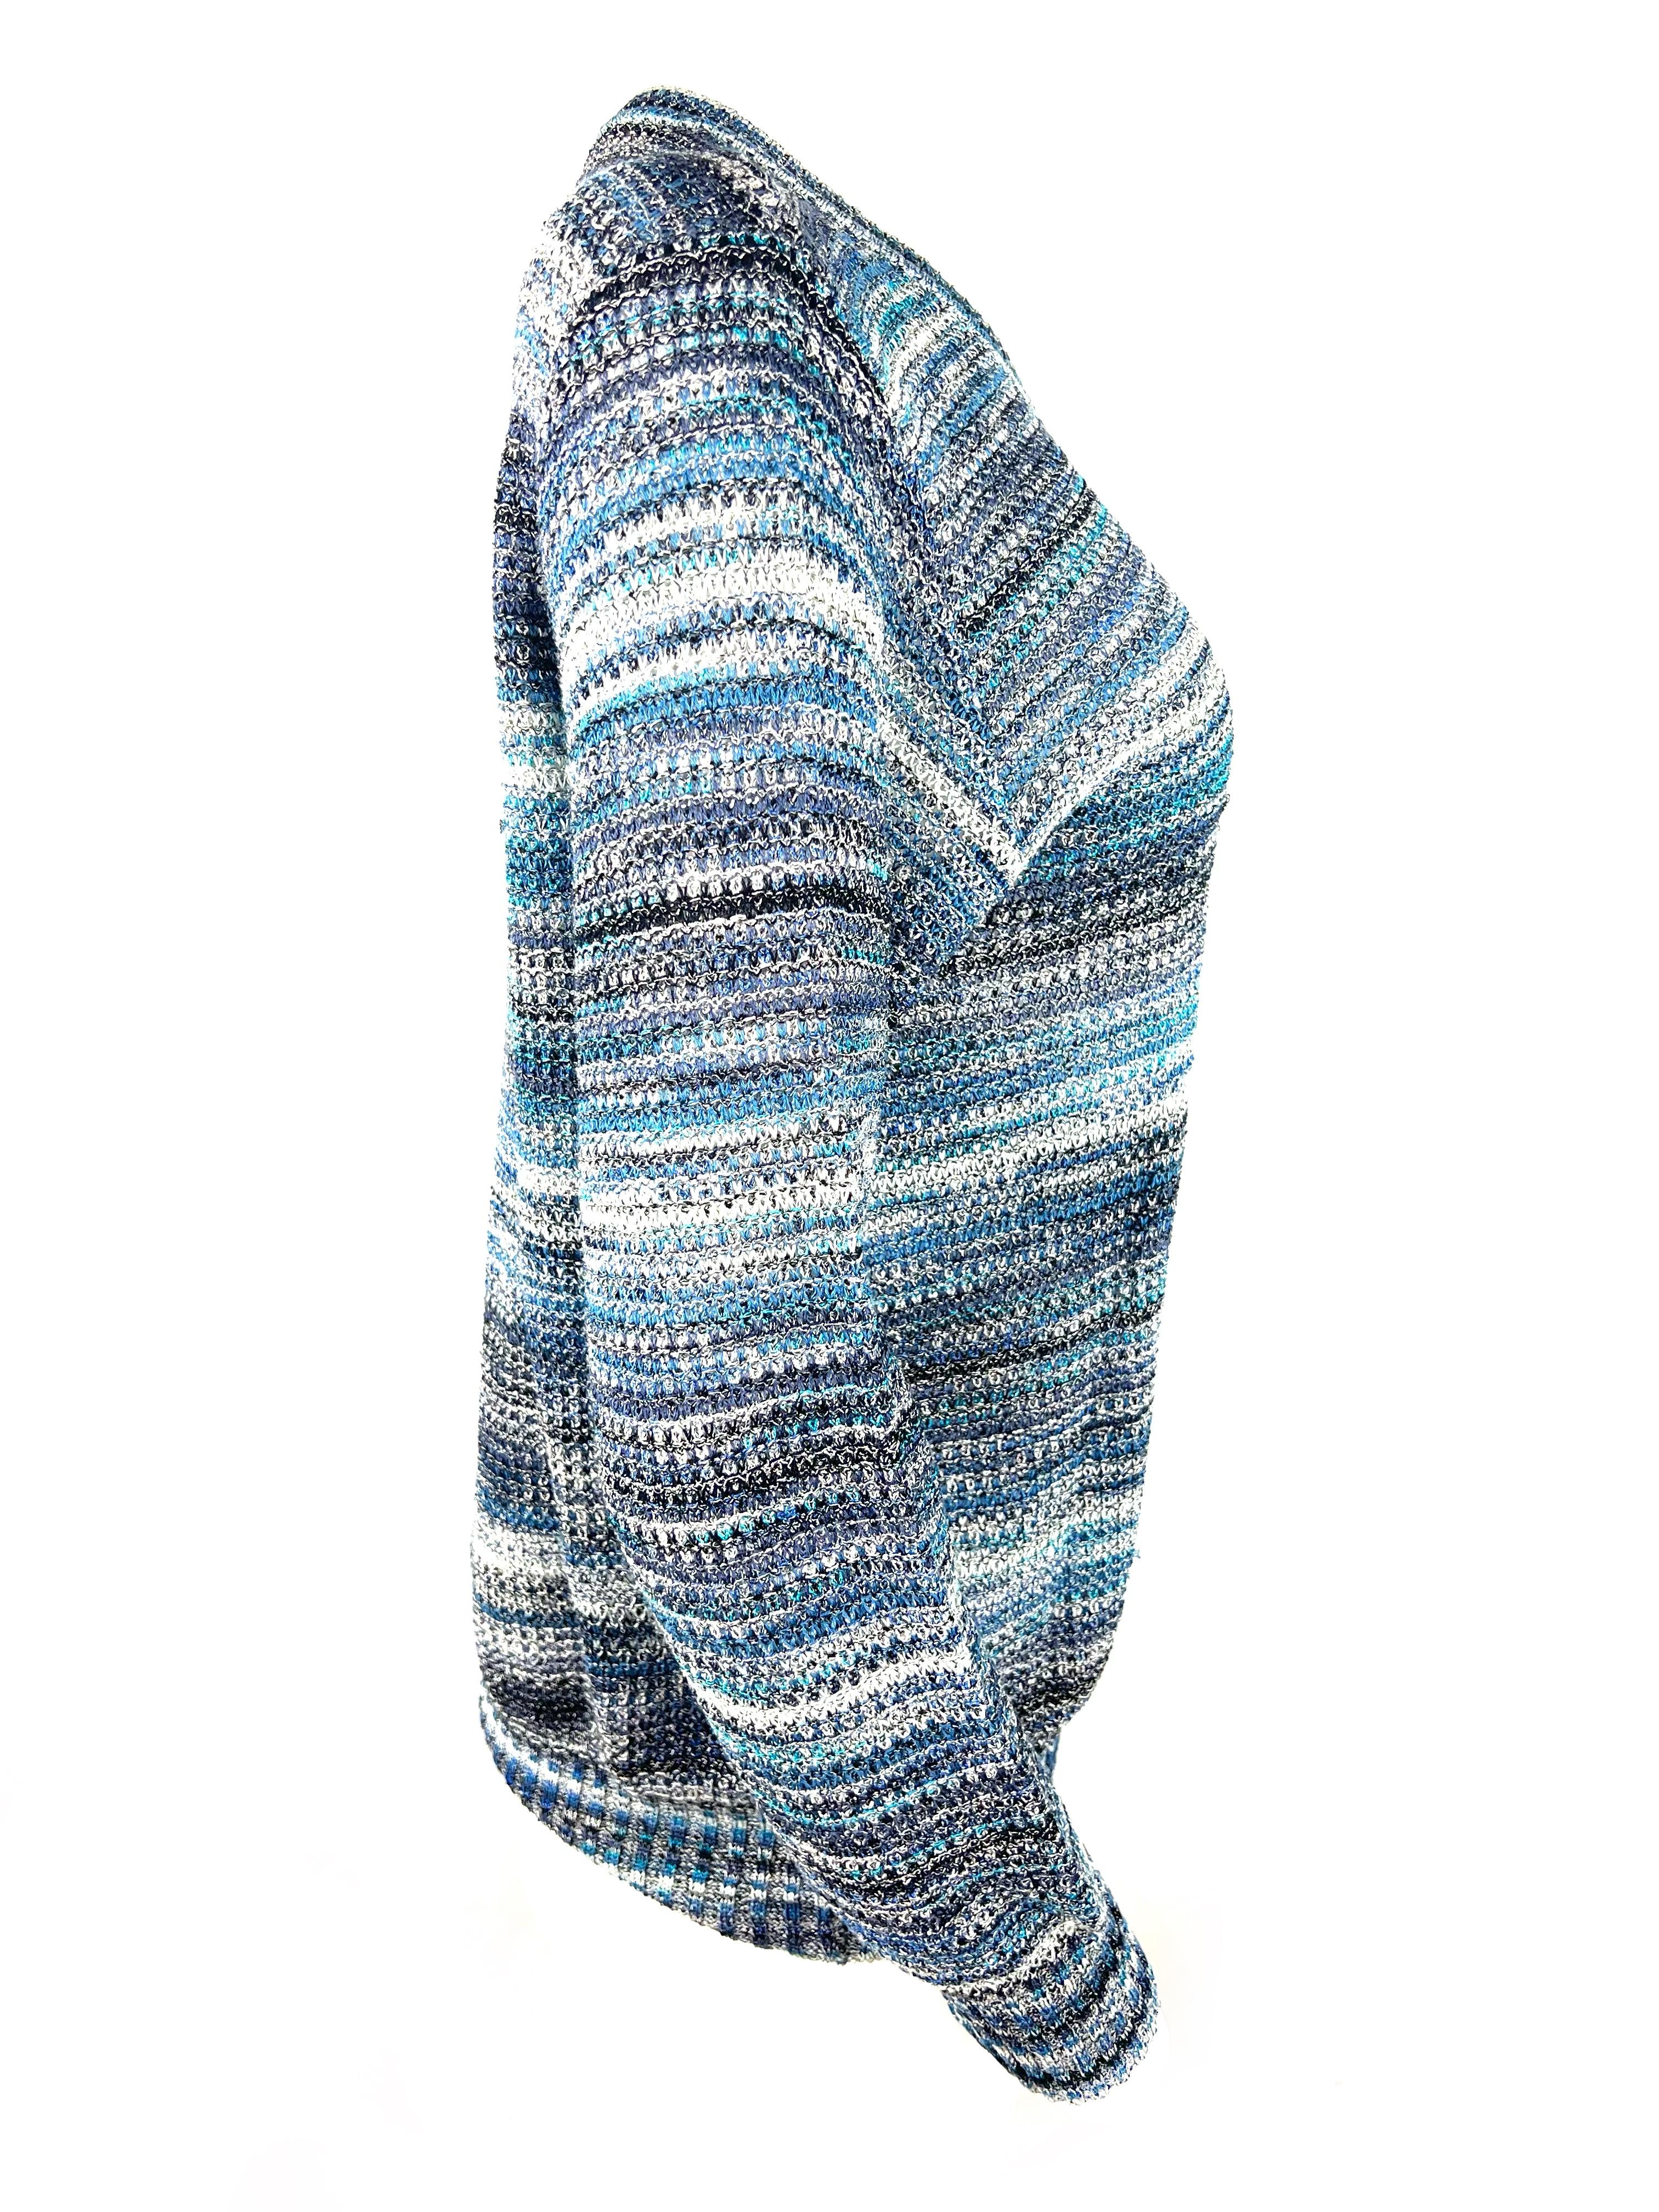 Einzelheiten zum Produkt:

Der Pullover hat ein blaues Streifenmuster, einen V-Ausschnitt und lange Ärmel.